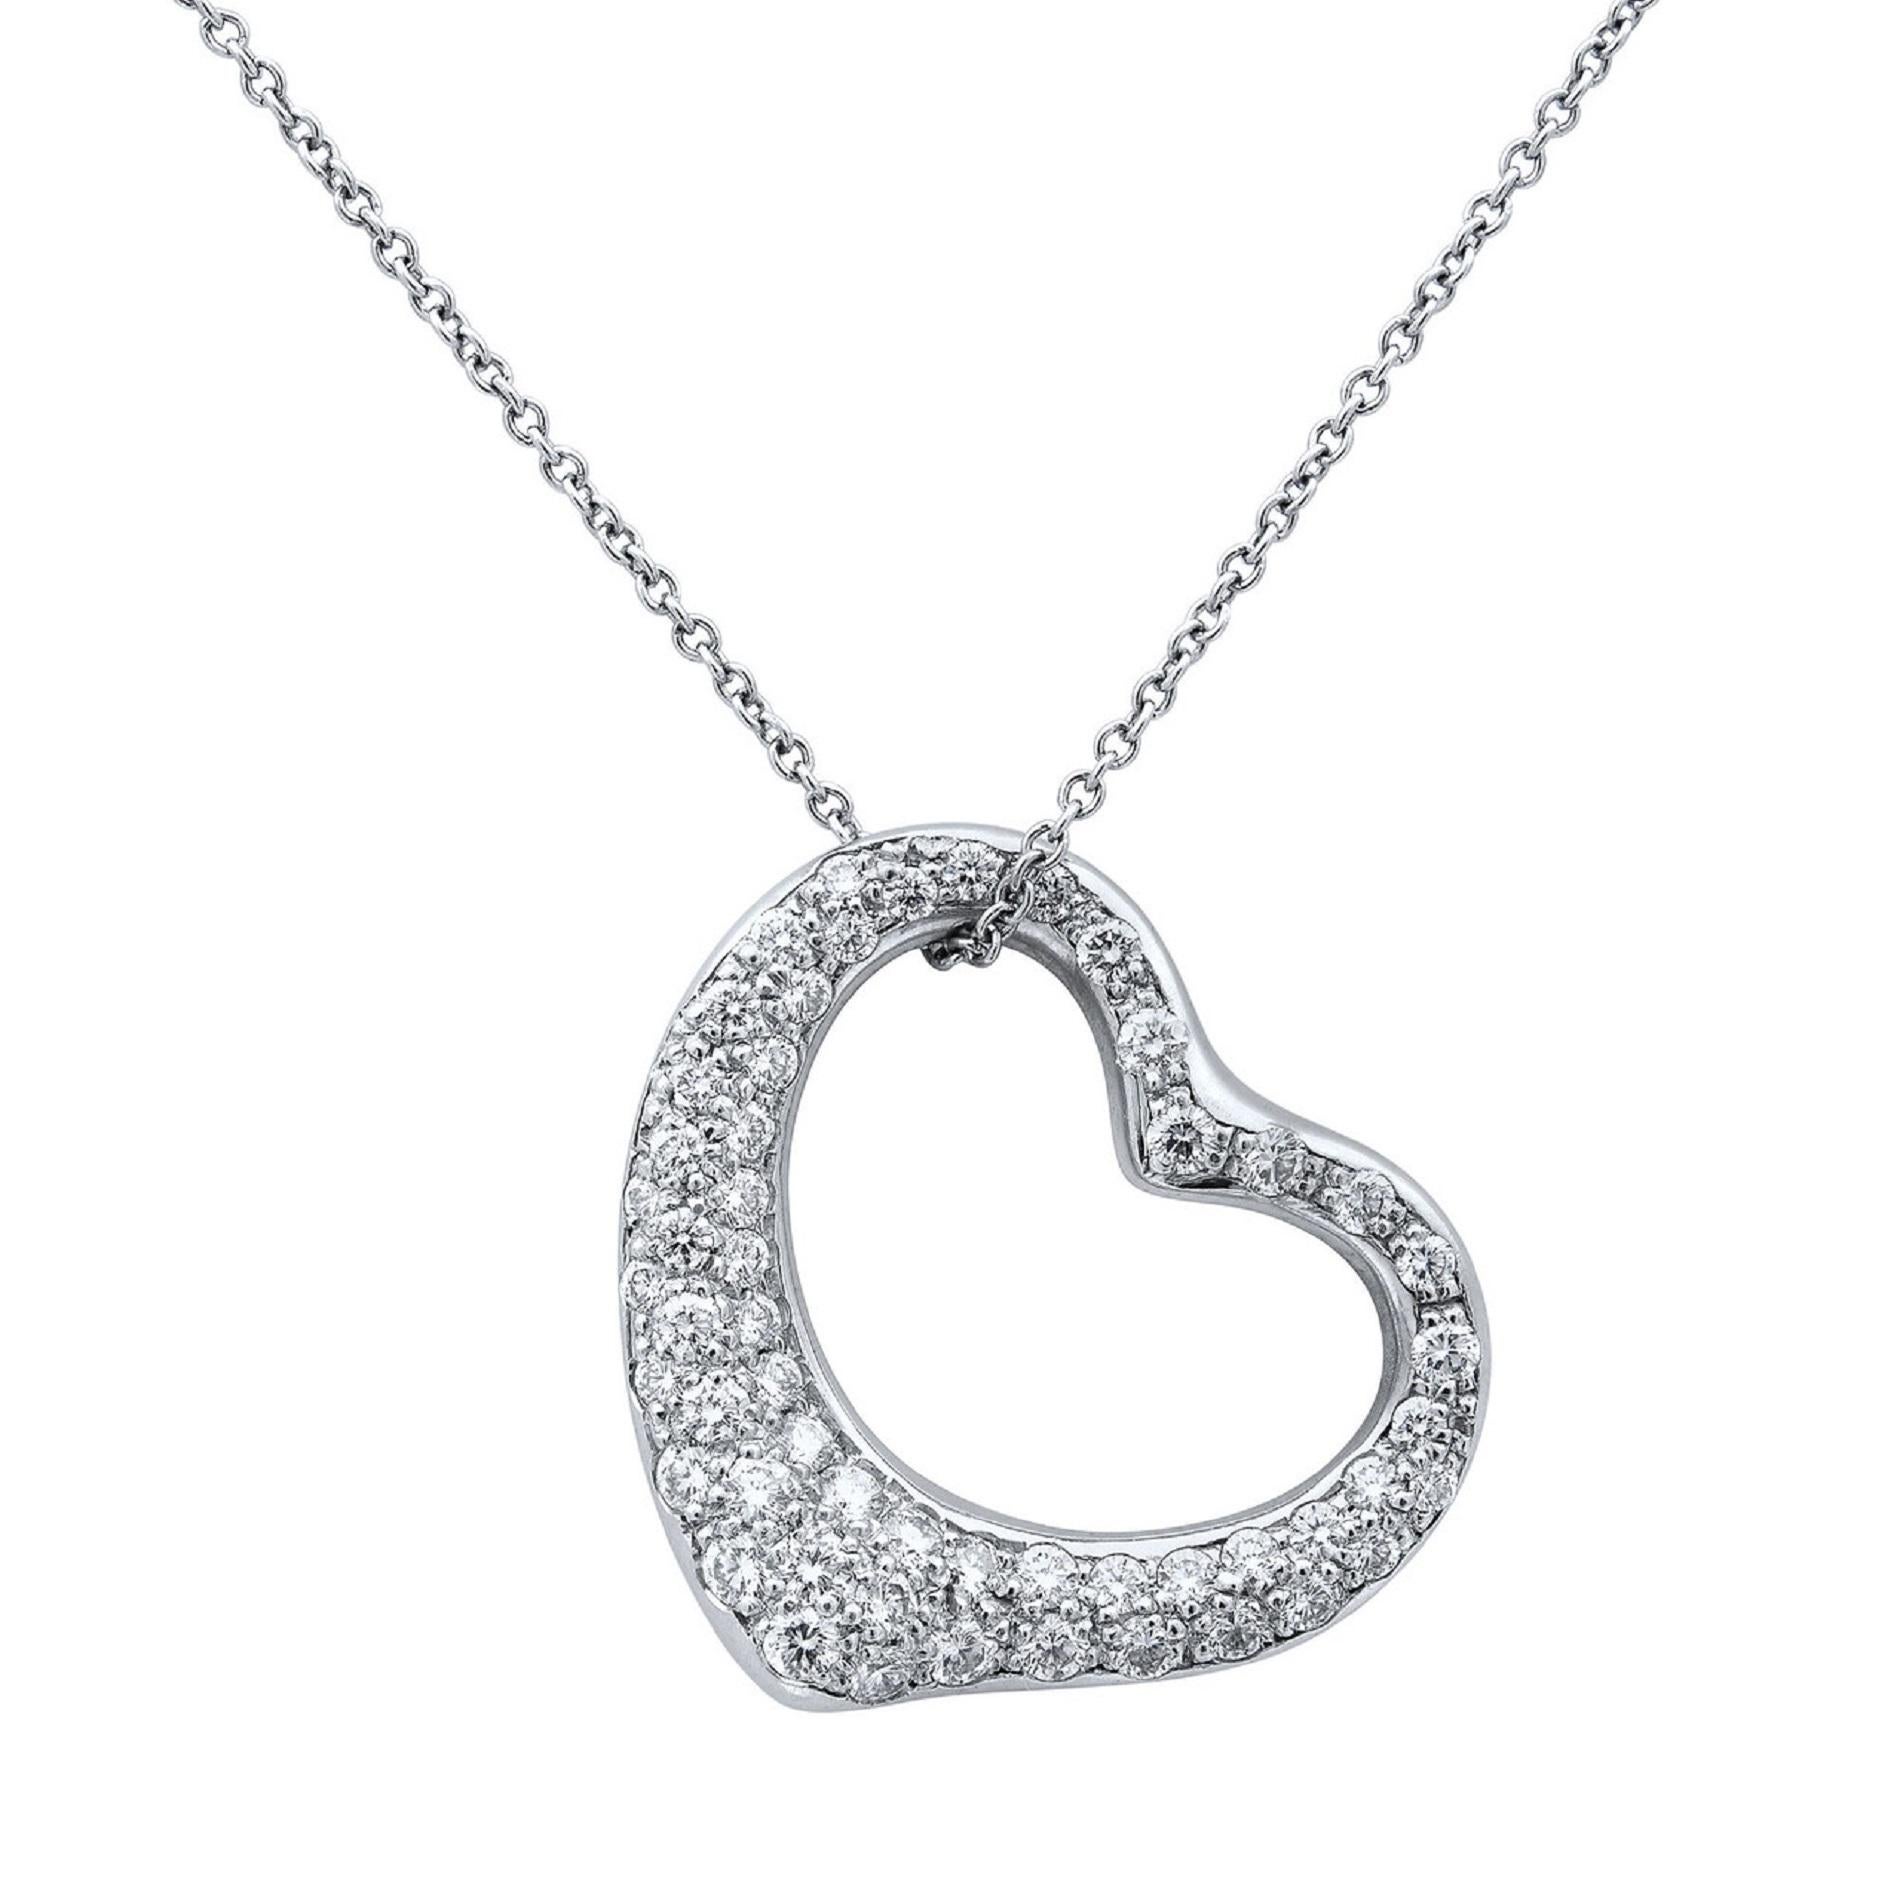 tiffany heart necklace with diamond